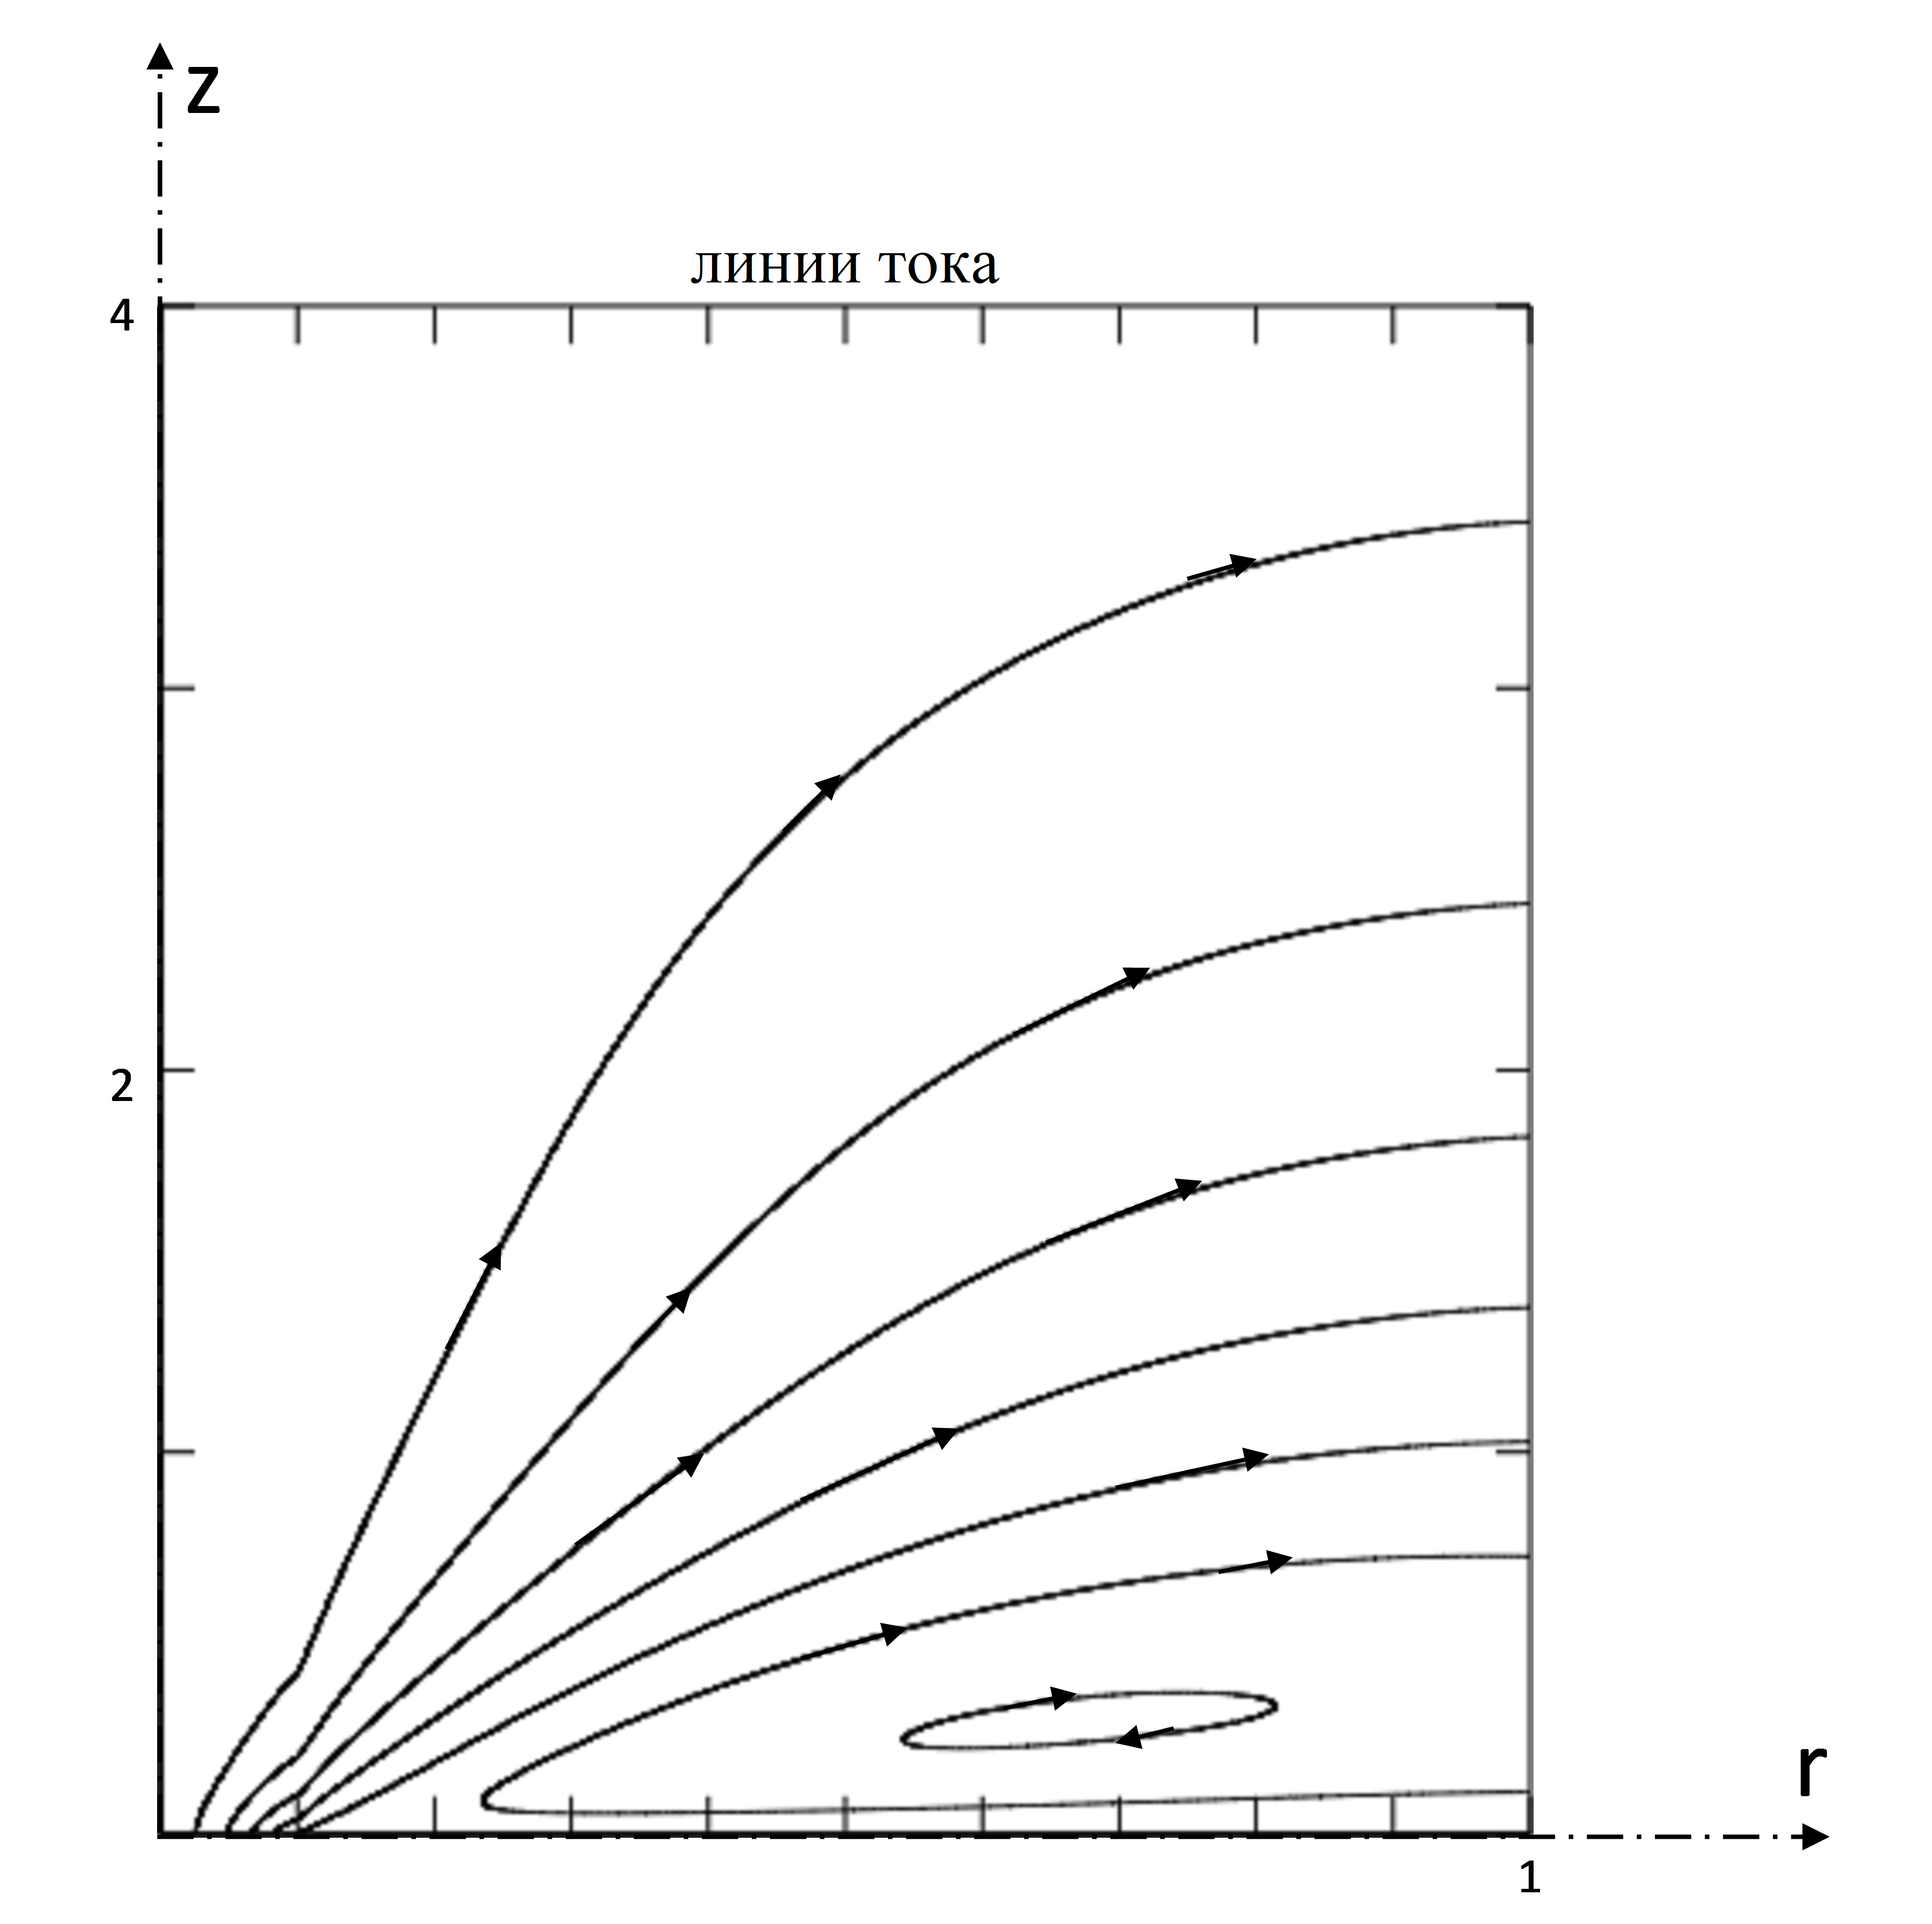 Общий вид линии тока течения при t → ∞